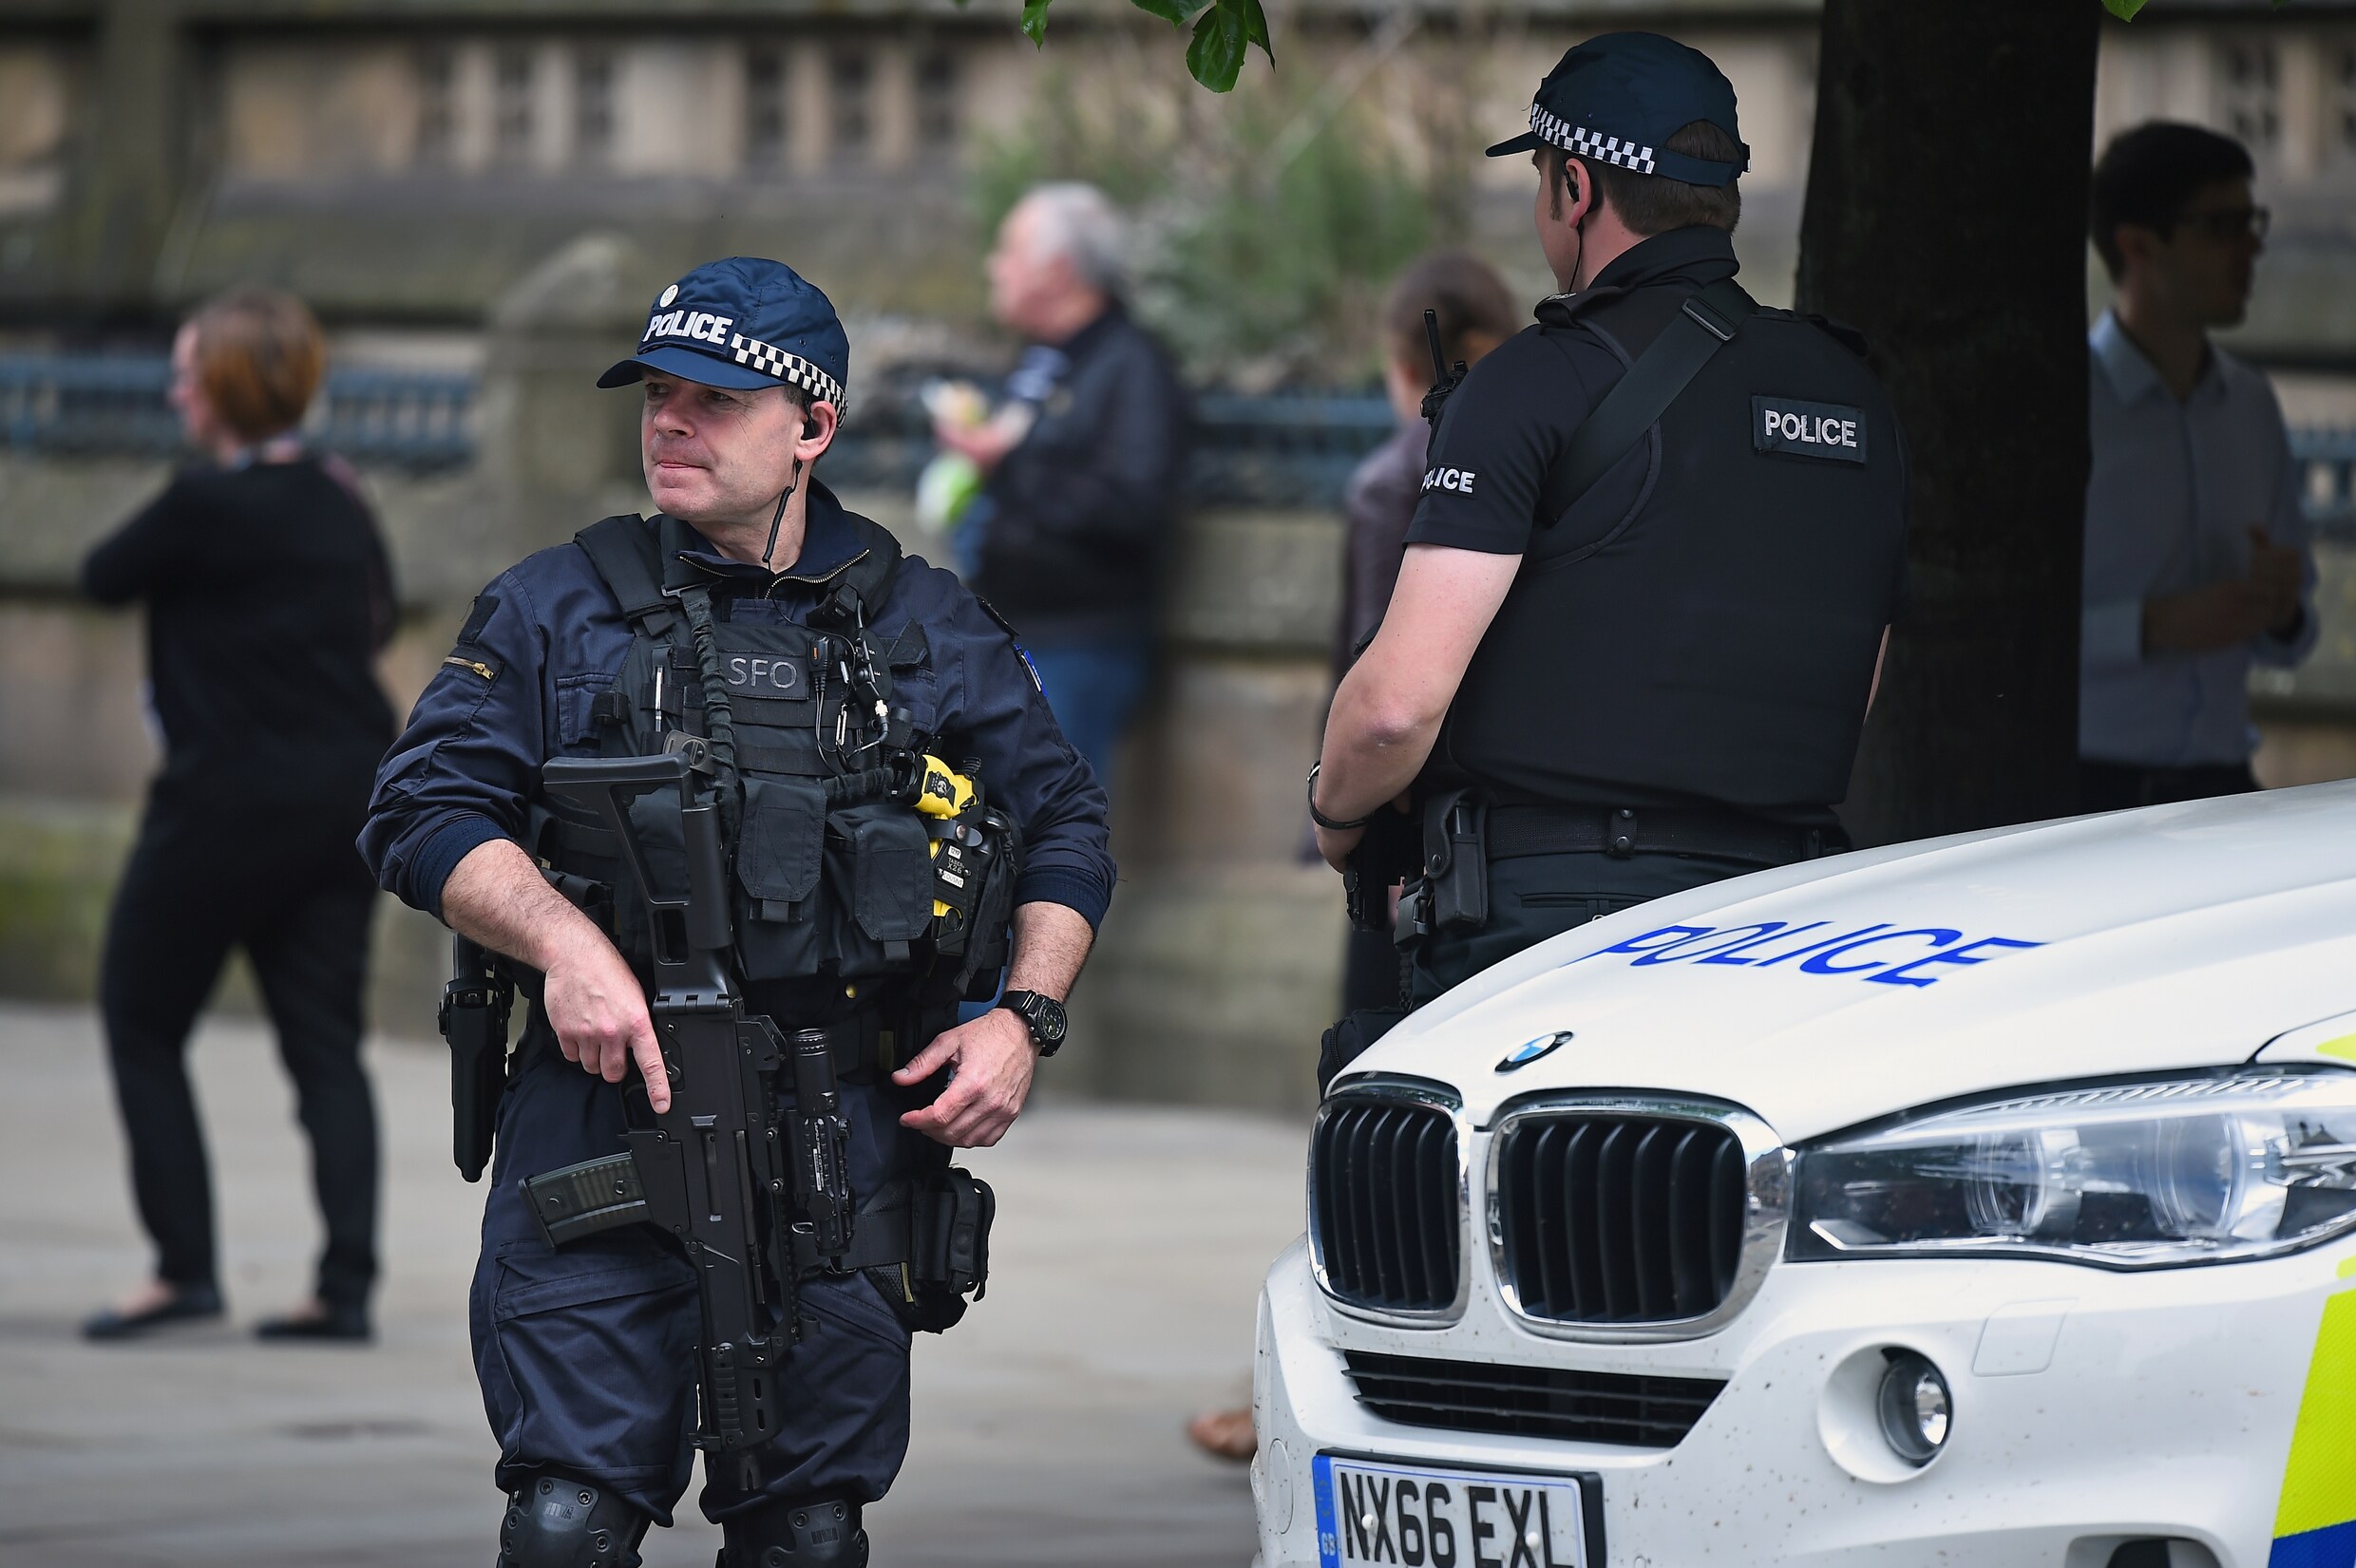 Politie Manchester gaat uit van 'netwerk' rondom aanslag, acht verdachten opgepakt